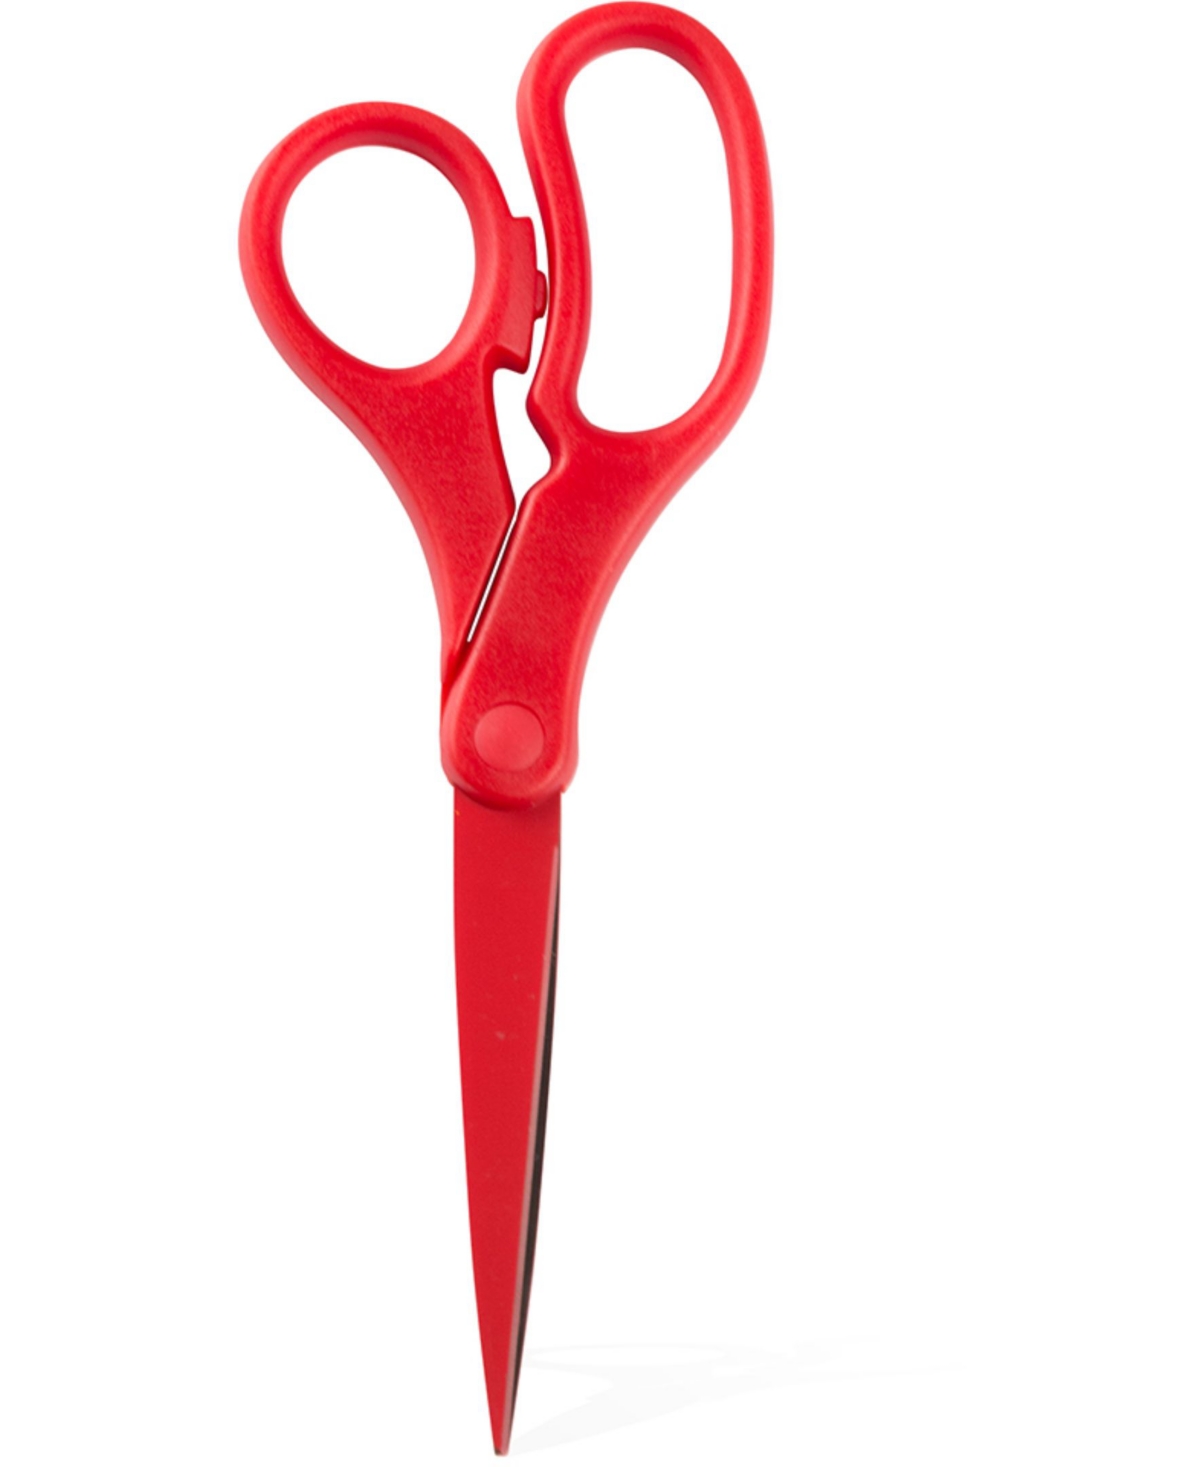 Jam Paper Multi-purpose Precision Scissors In Red